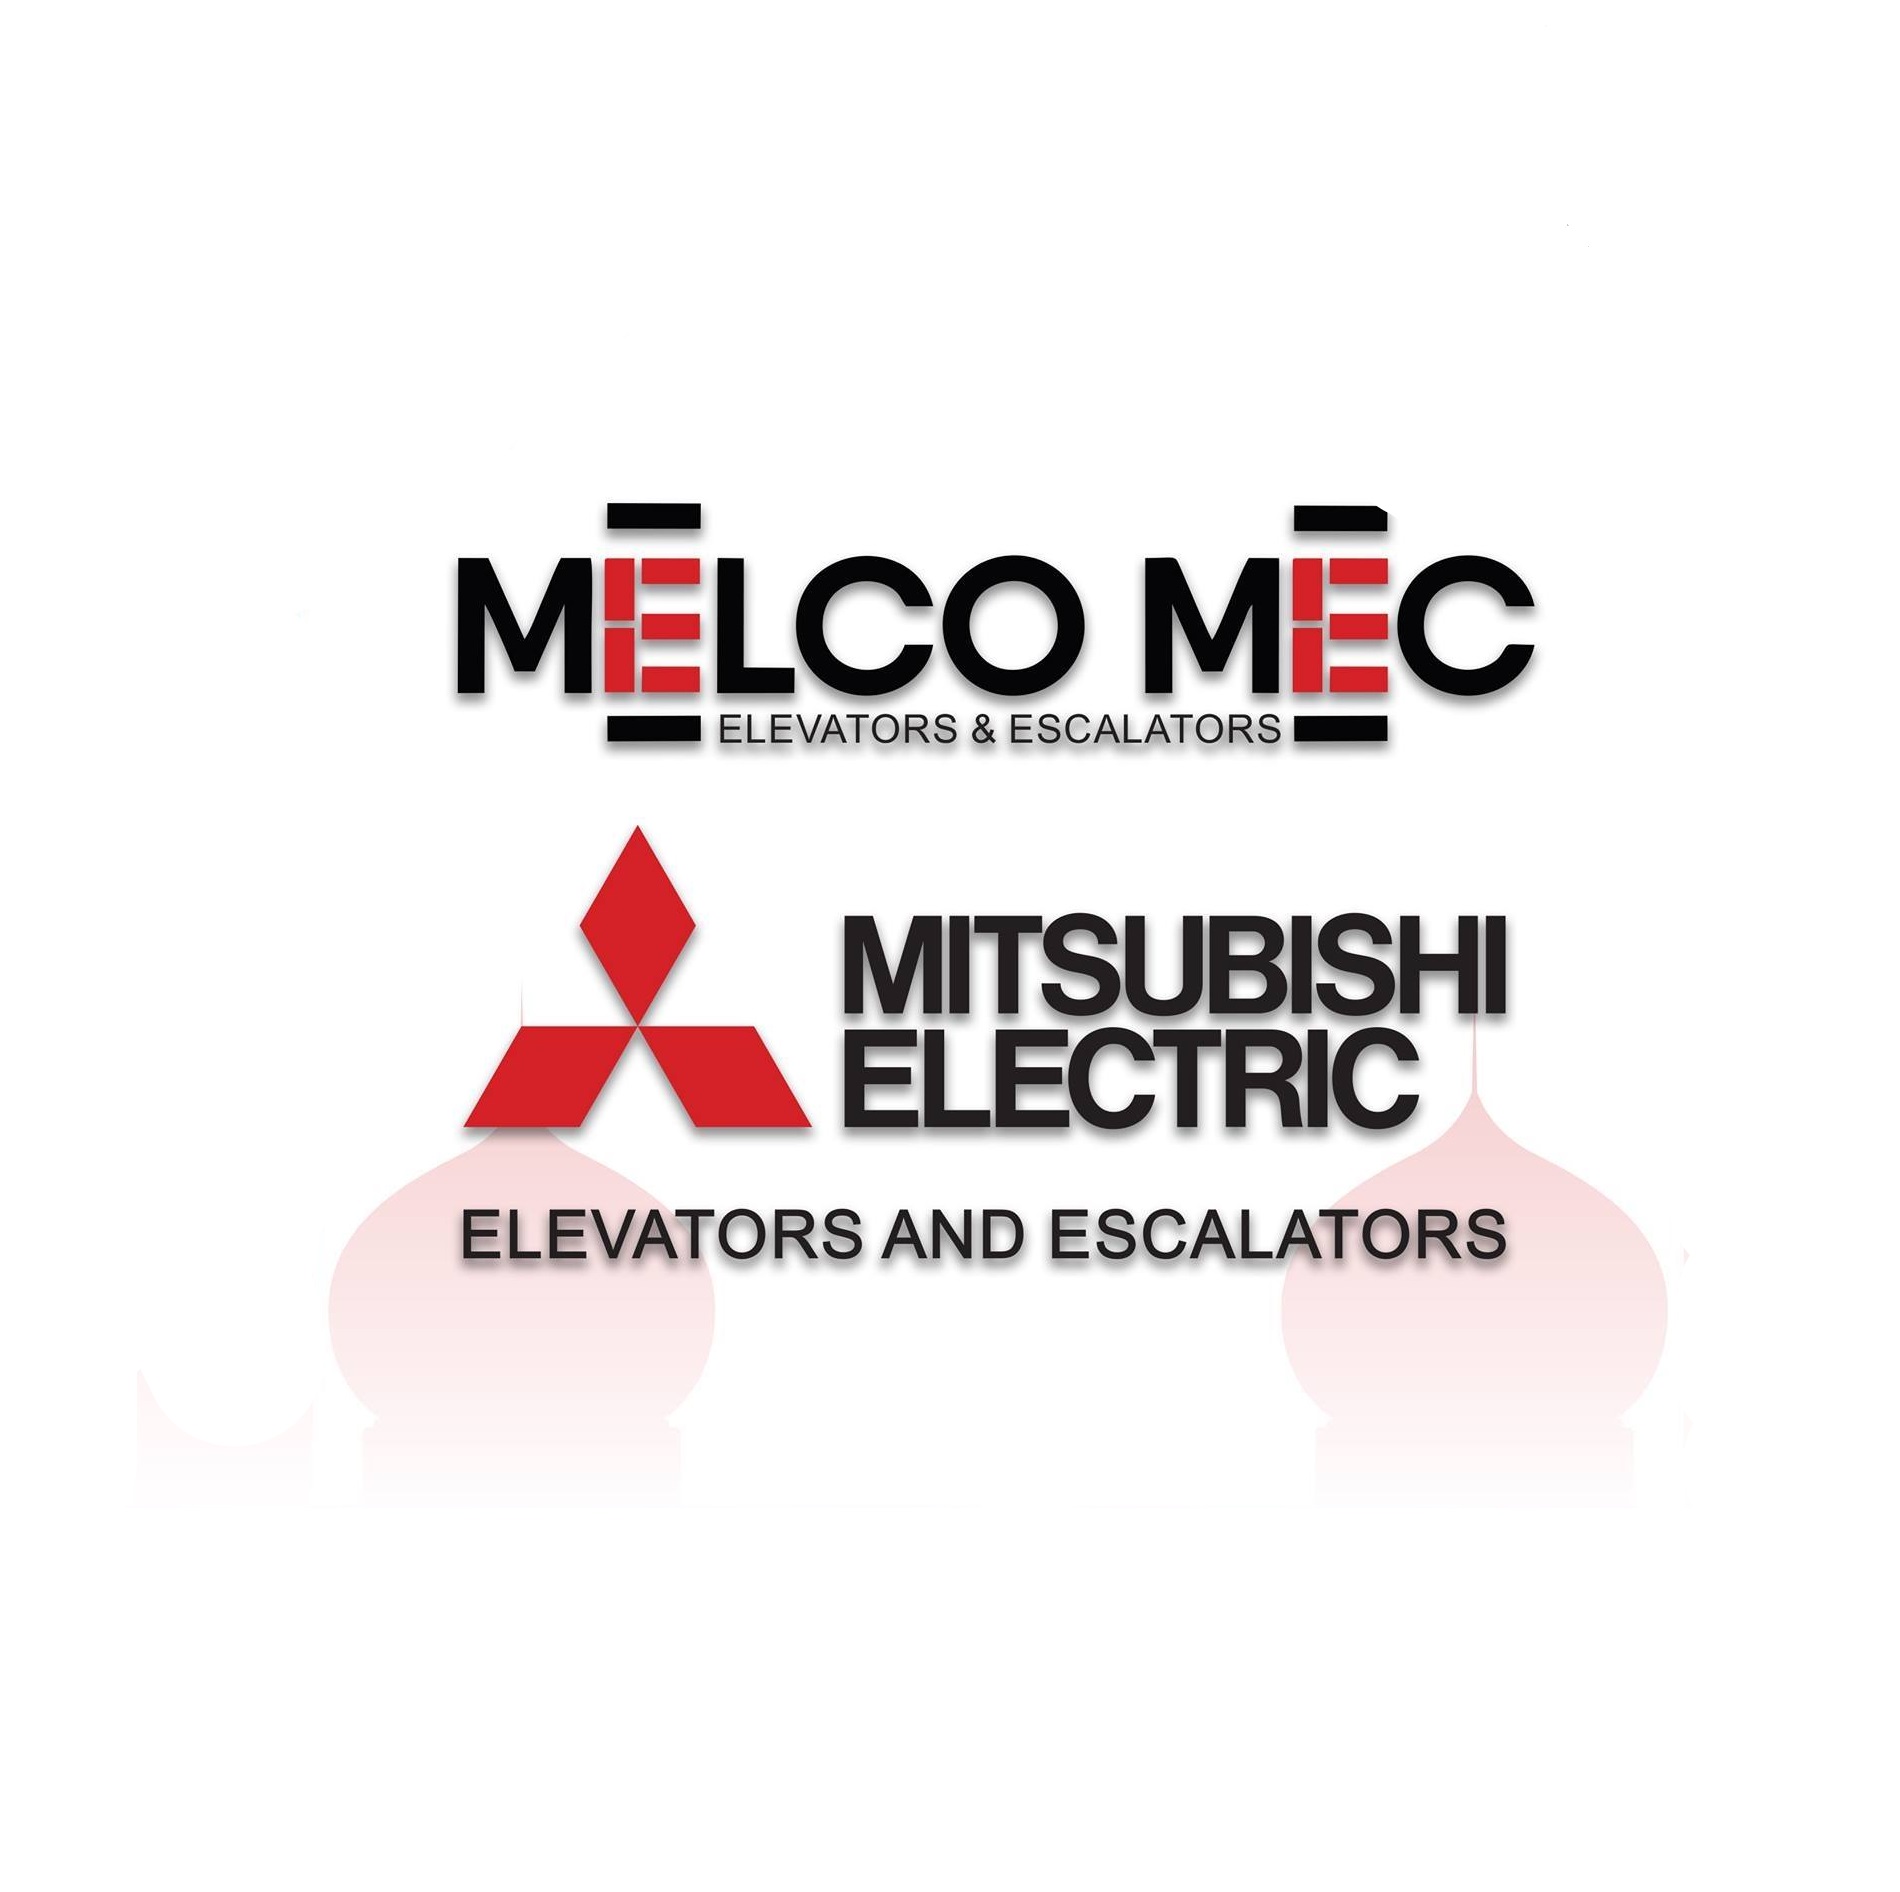 Melco Mec Mitsubishi